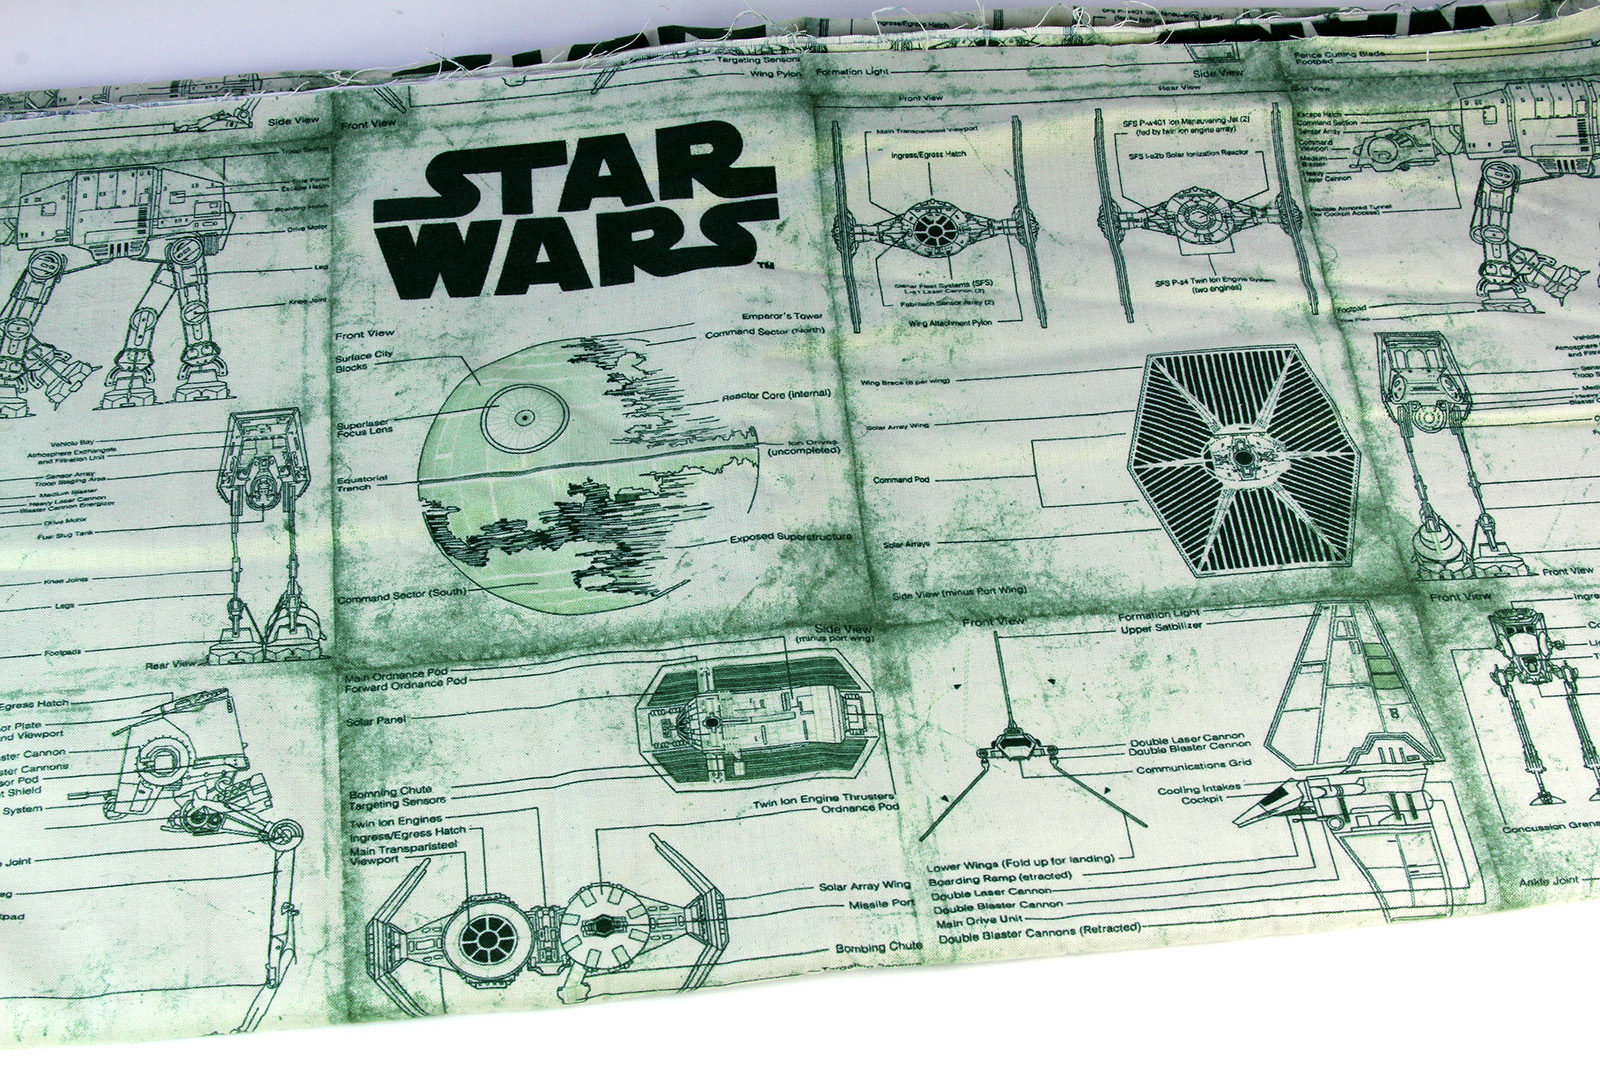 Star Wars fabrics